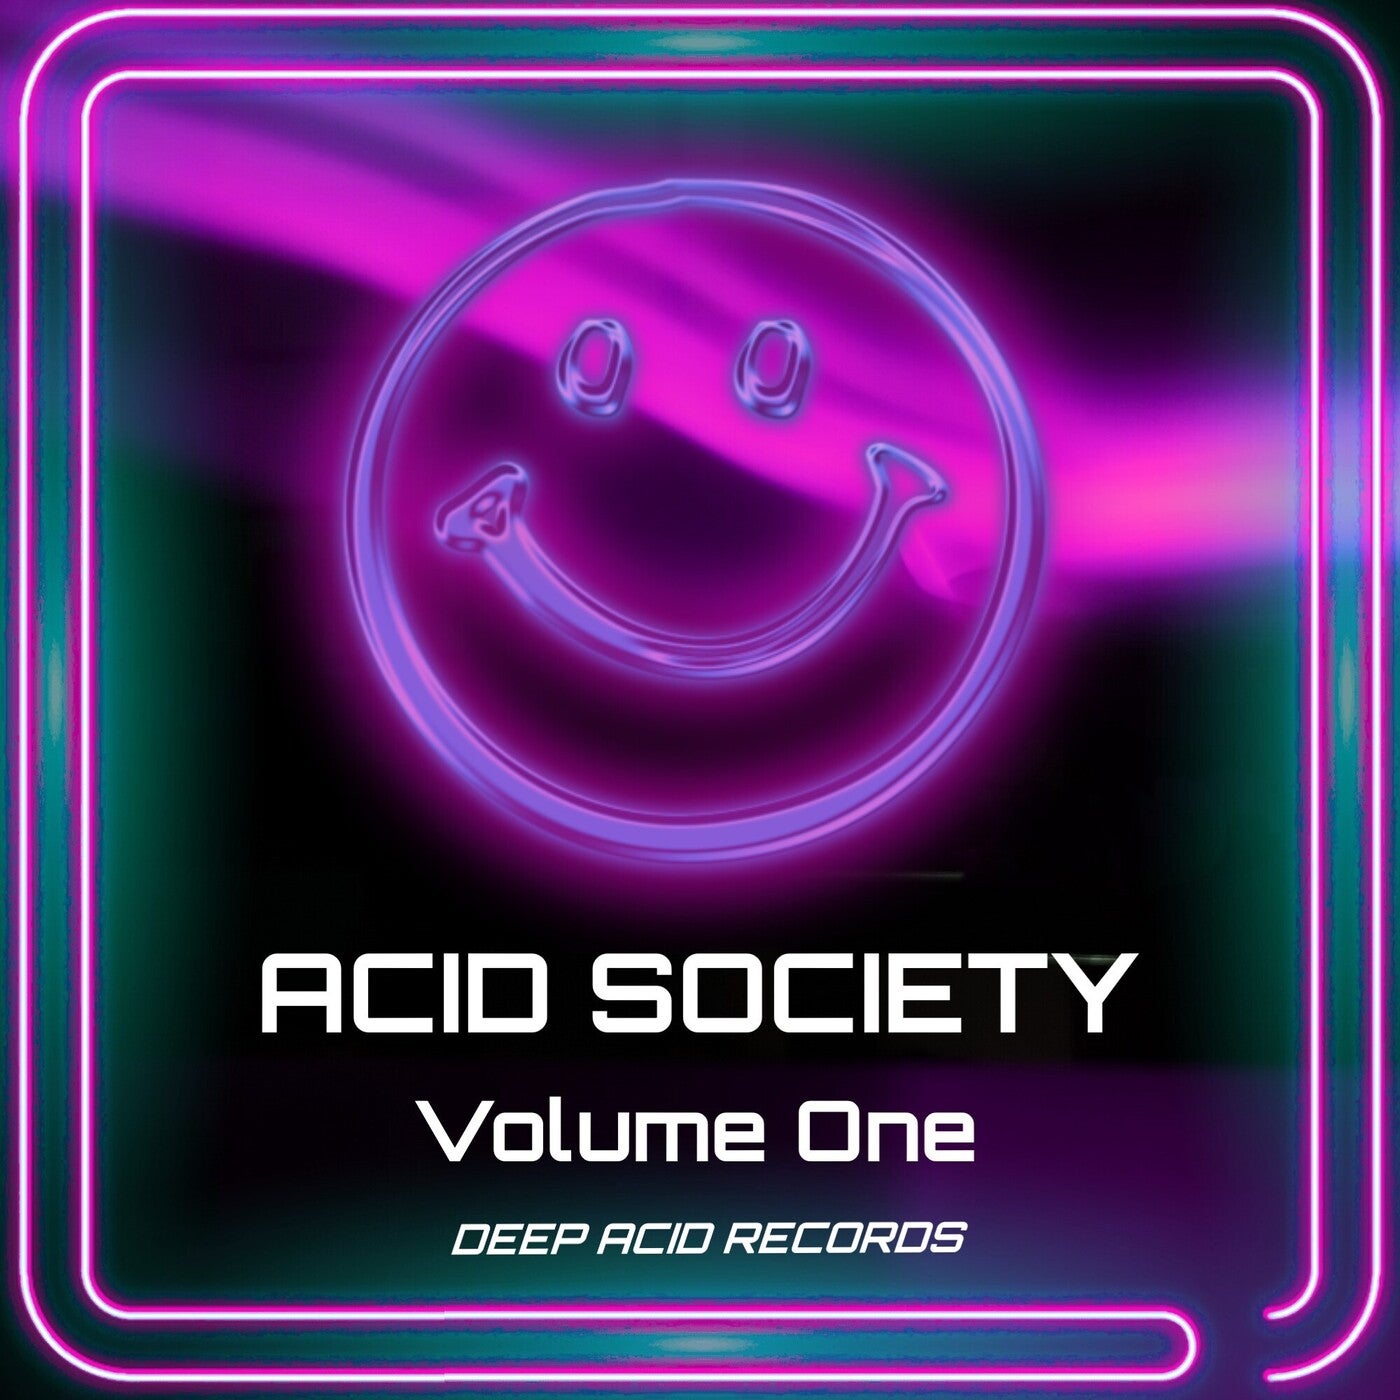 ACID SOCIETY Volume One